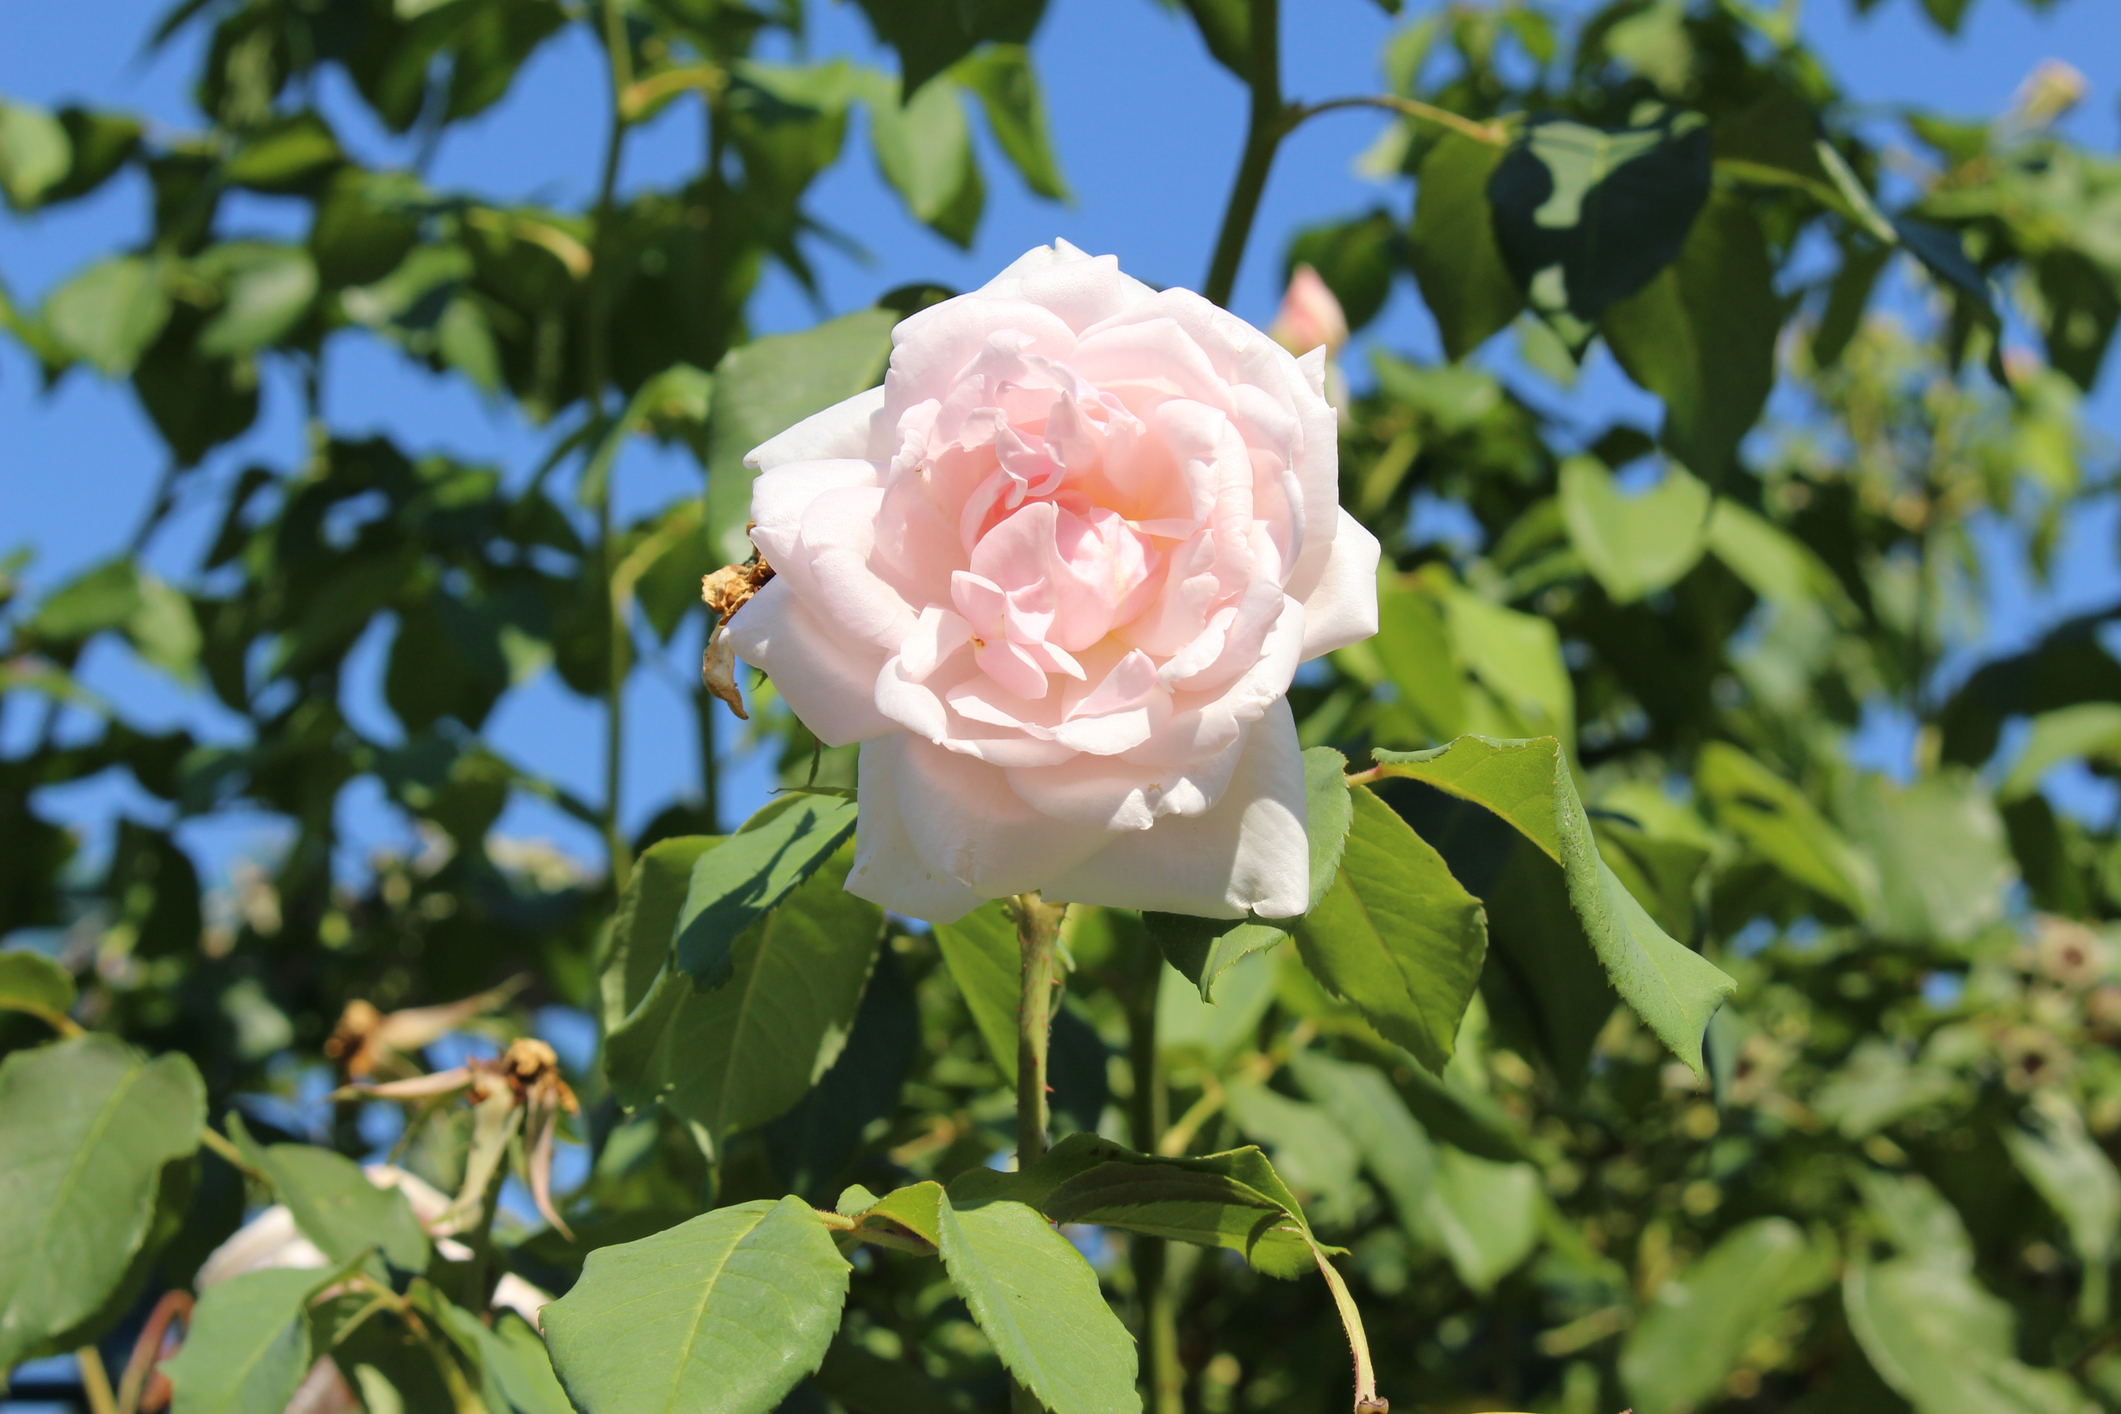 Le rosier liane ’Madame Alfred Carrière’, d'une floraison remontante blanc crème très parfumée, peut atteindre jusqu'à 5 m de hauteur ! Copyright (c) mr_coffee/Istock.